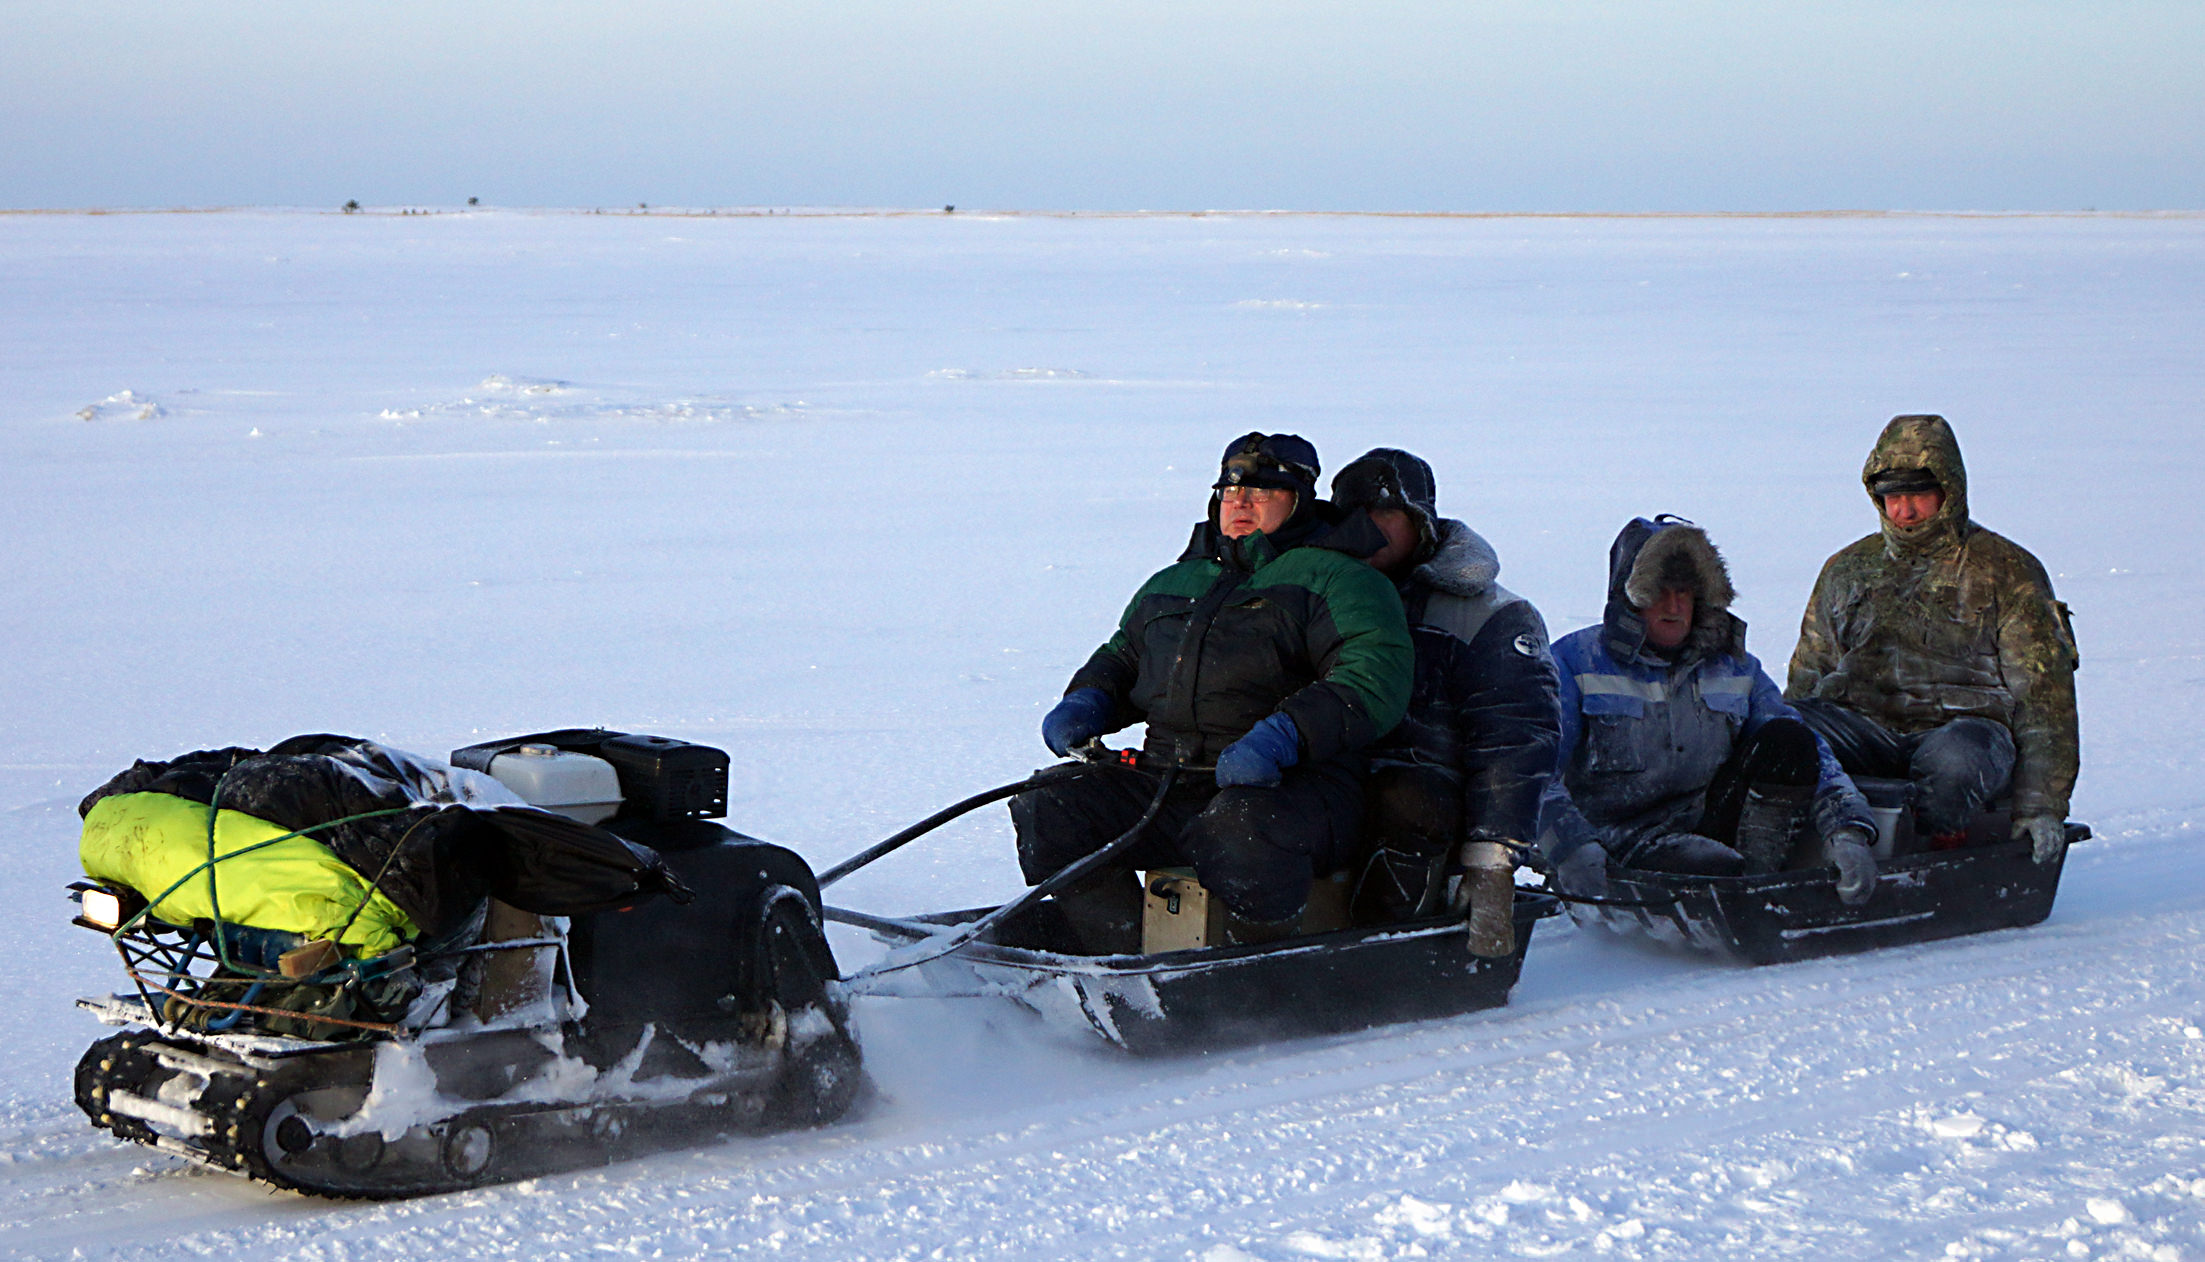 Соната тур рыбалка на севере главная архангельск. Зимняя рыбалка на белом море Северодвинск. Соната тур рыбалка на севере Северодвинск. Зимняя рыбалка в Северодвинске. Рыбалка на севере Северодвинск.